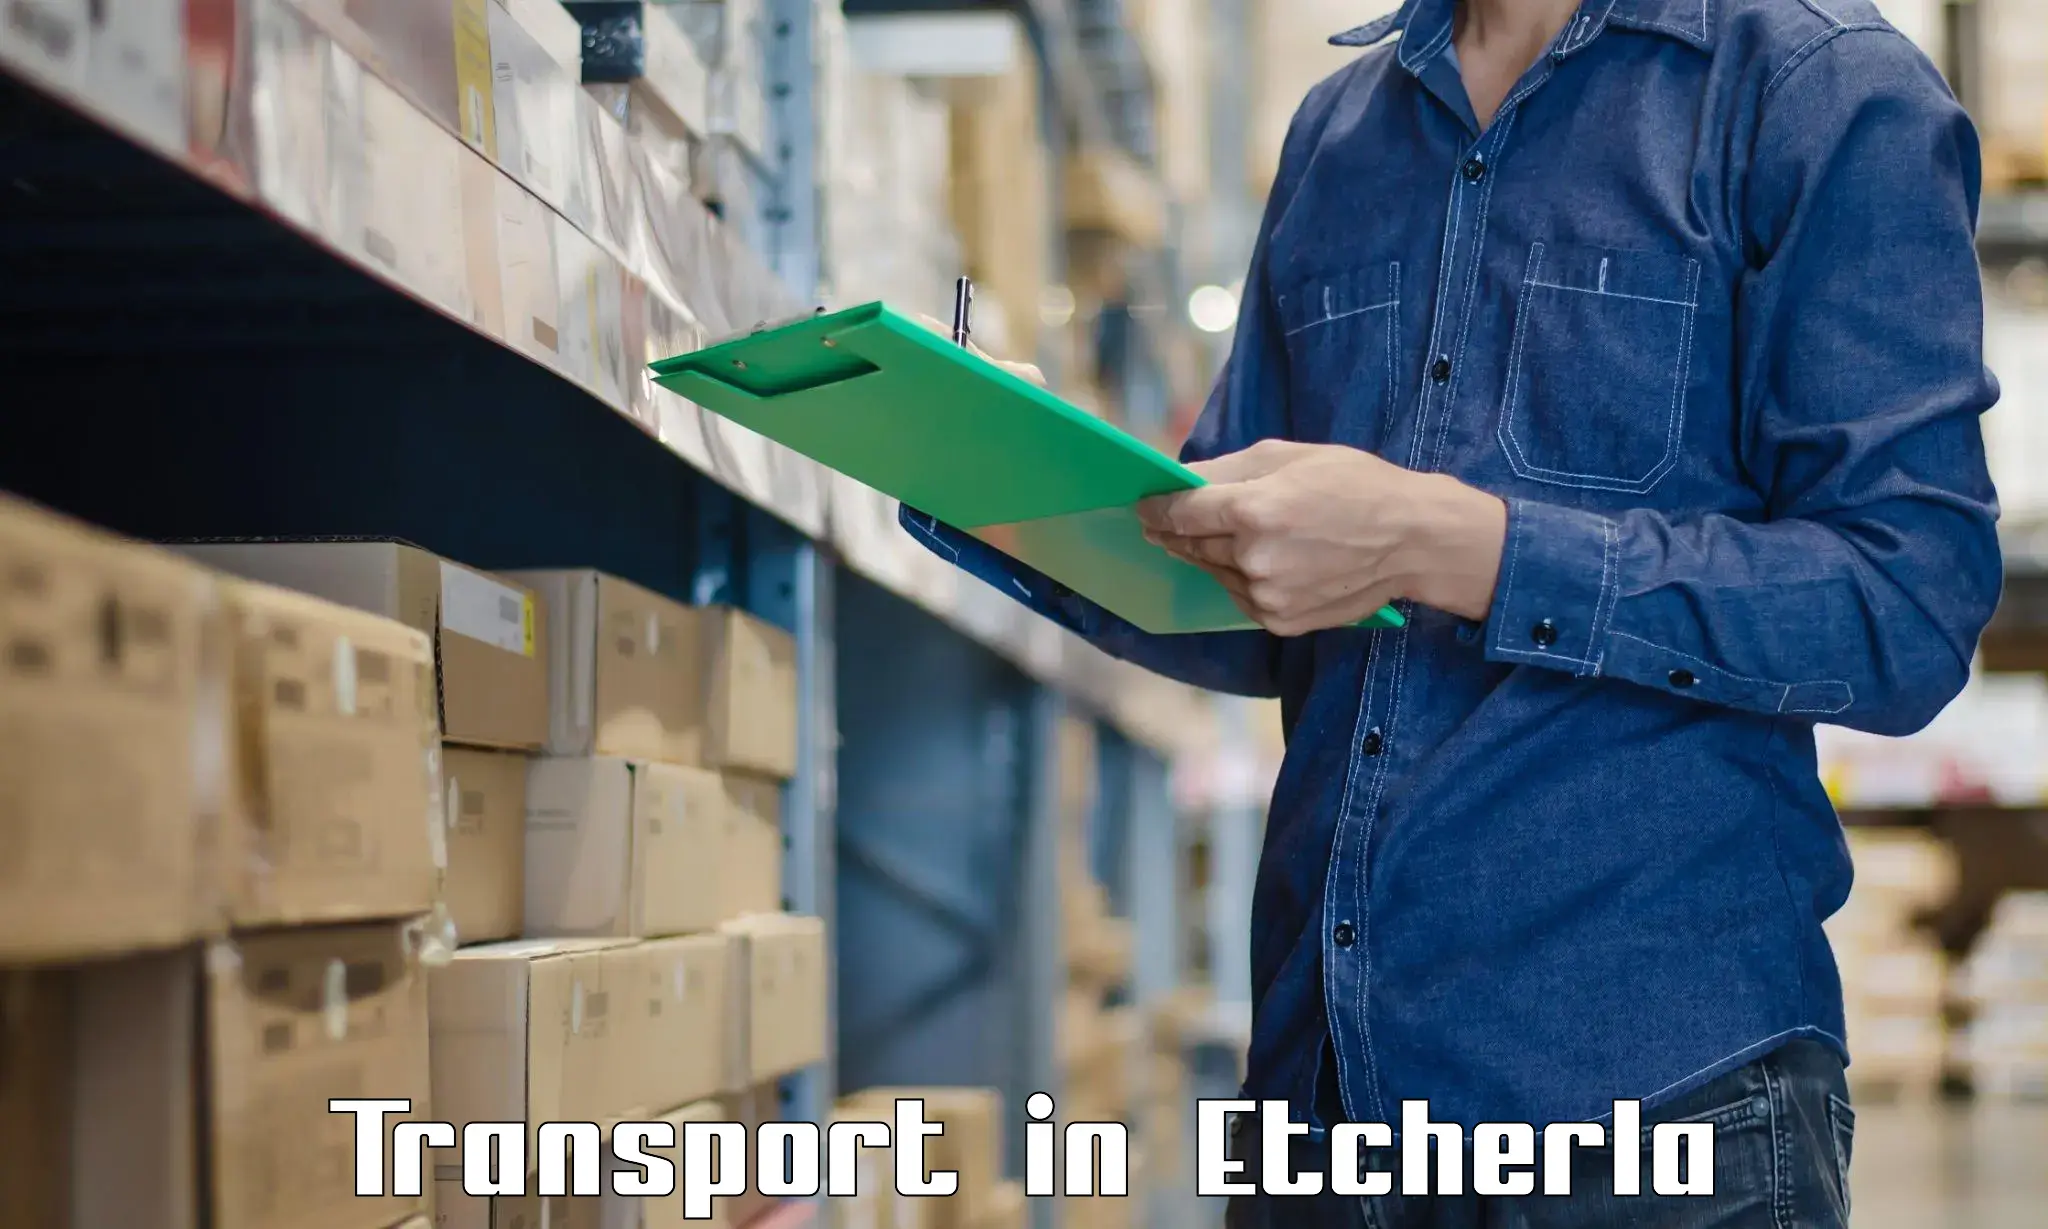 Furniture transport service in Etcherla